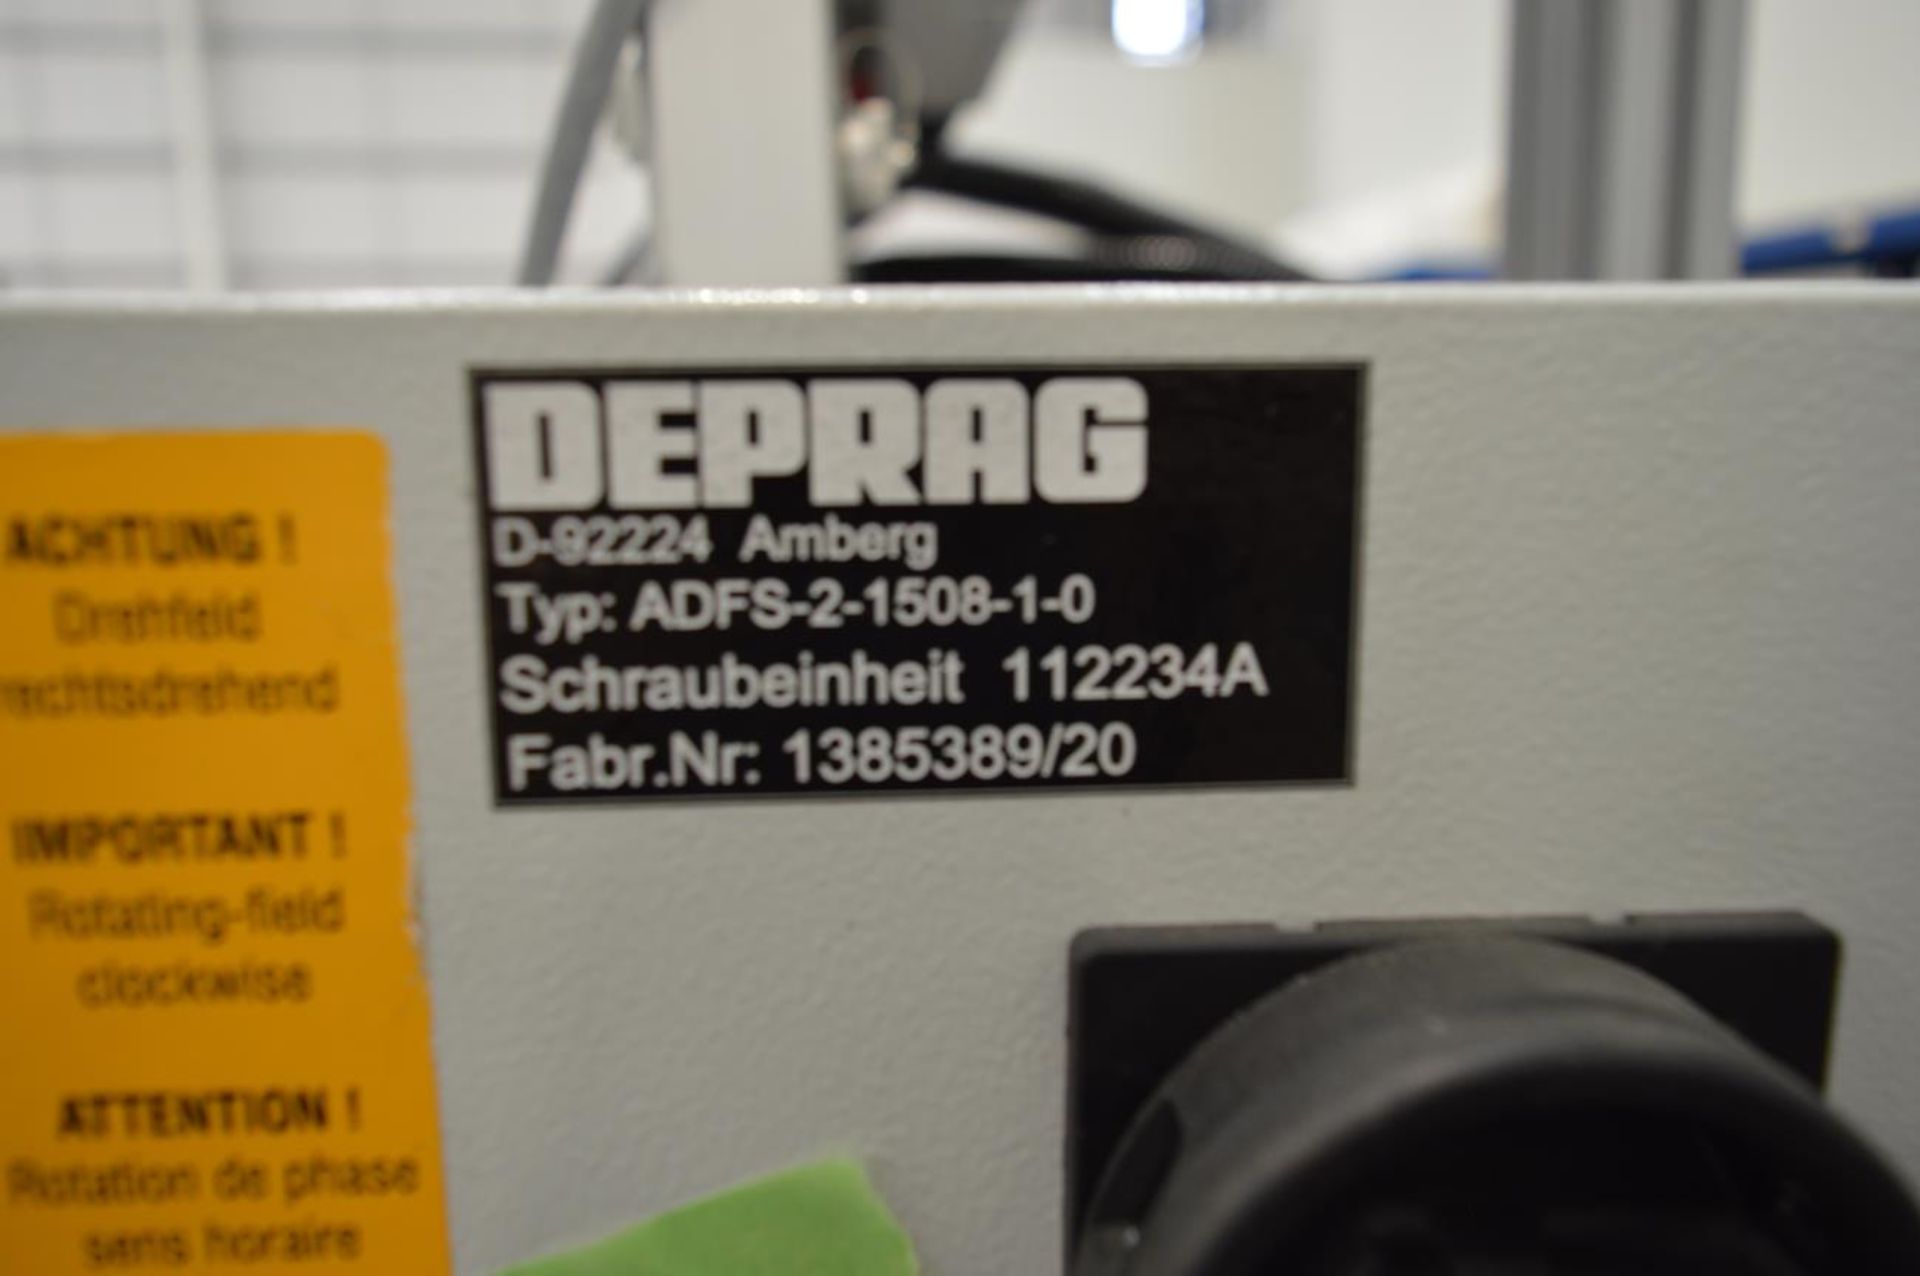 Deprag, ADFS-2-1508-1-0 controller, Serial No. 1385389/20 with Deprag, DPU210 HMI - Image 4 of 4